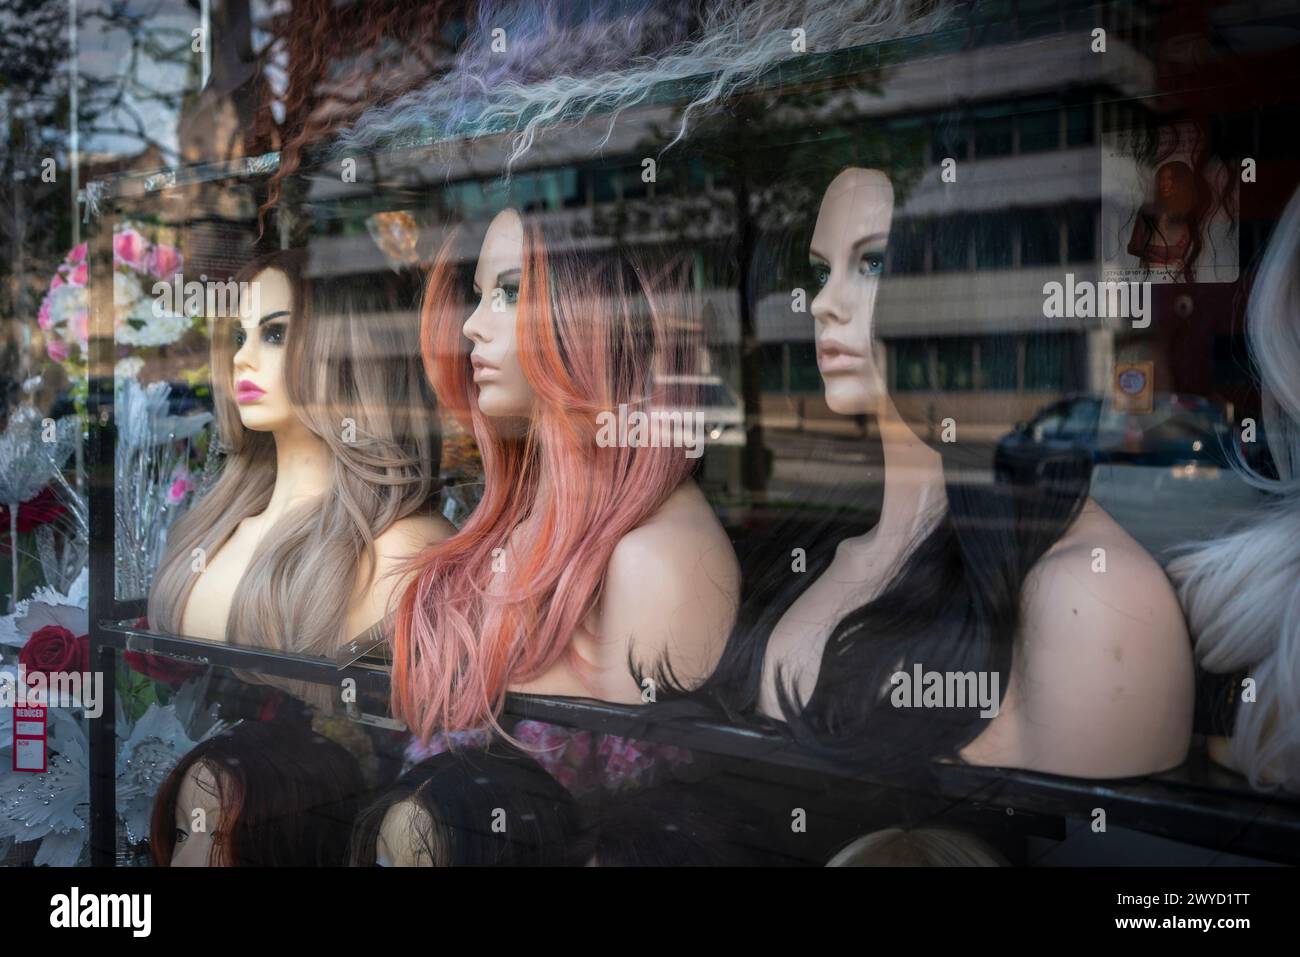 Tre parrucchieri in mostra in una vetrina per un negozio che vende estensioni per capelli lungo Commercial Street a Southampton, Hampshire, Inghilterra, Regno Unito Foto Stock